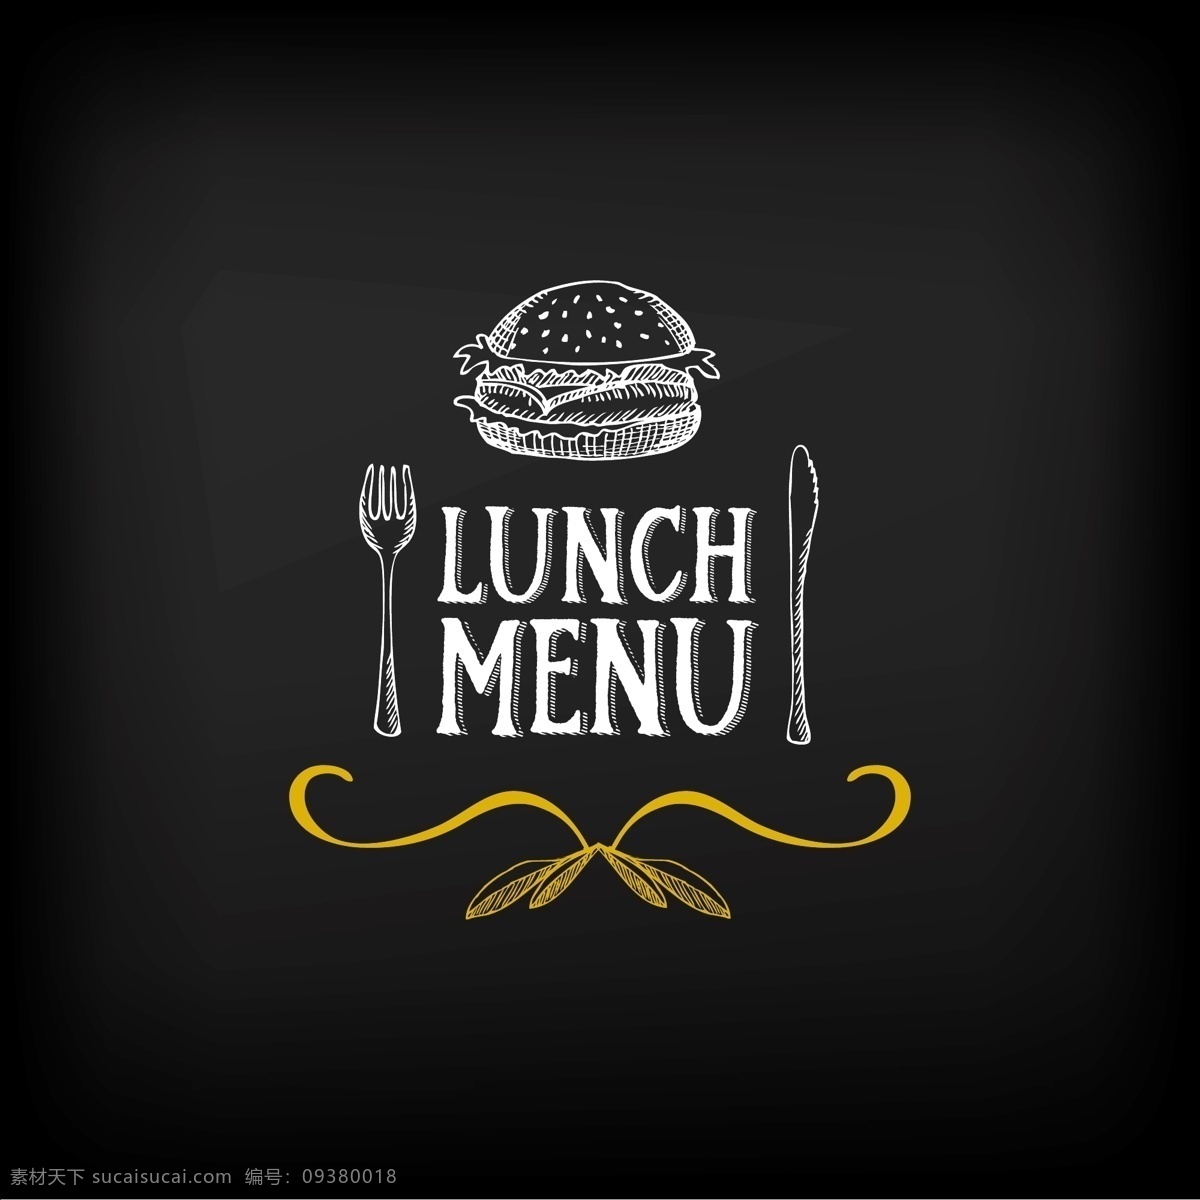 西餐 午餐 菜单 标志 logo 矢量 汉堡 刀叉 卡通 粉笔画 手绘 线条 白色 美食 装饰